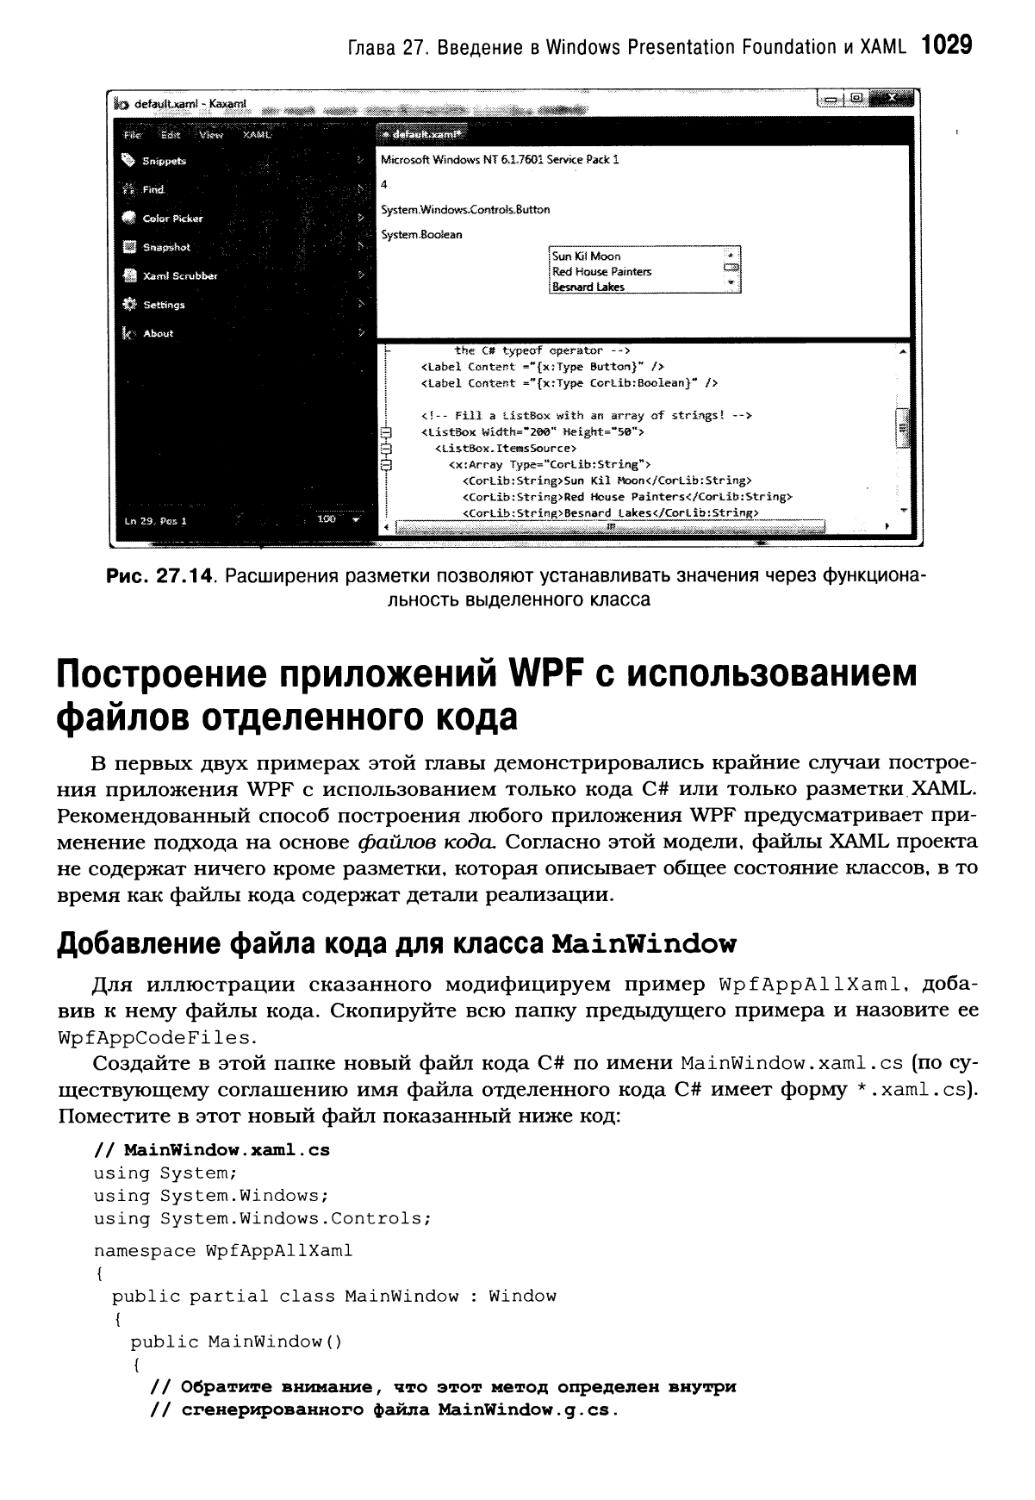 Построение приложений WPF с использованием файлов отделенного кода